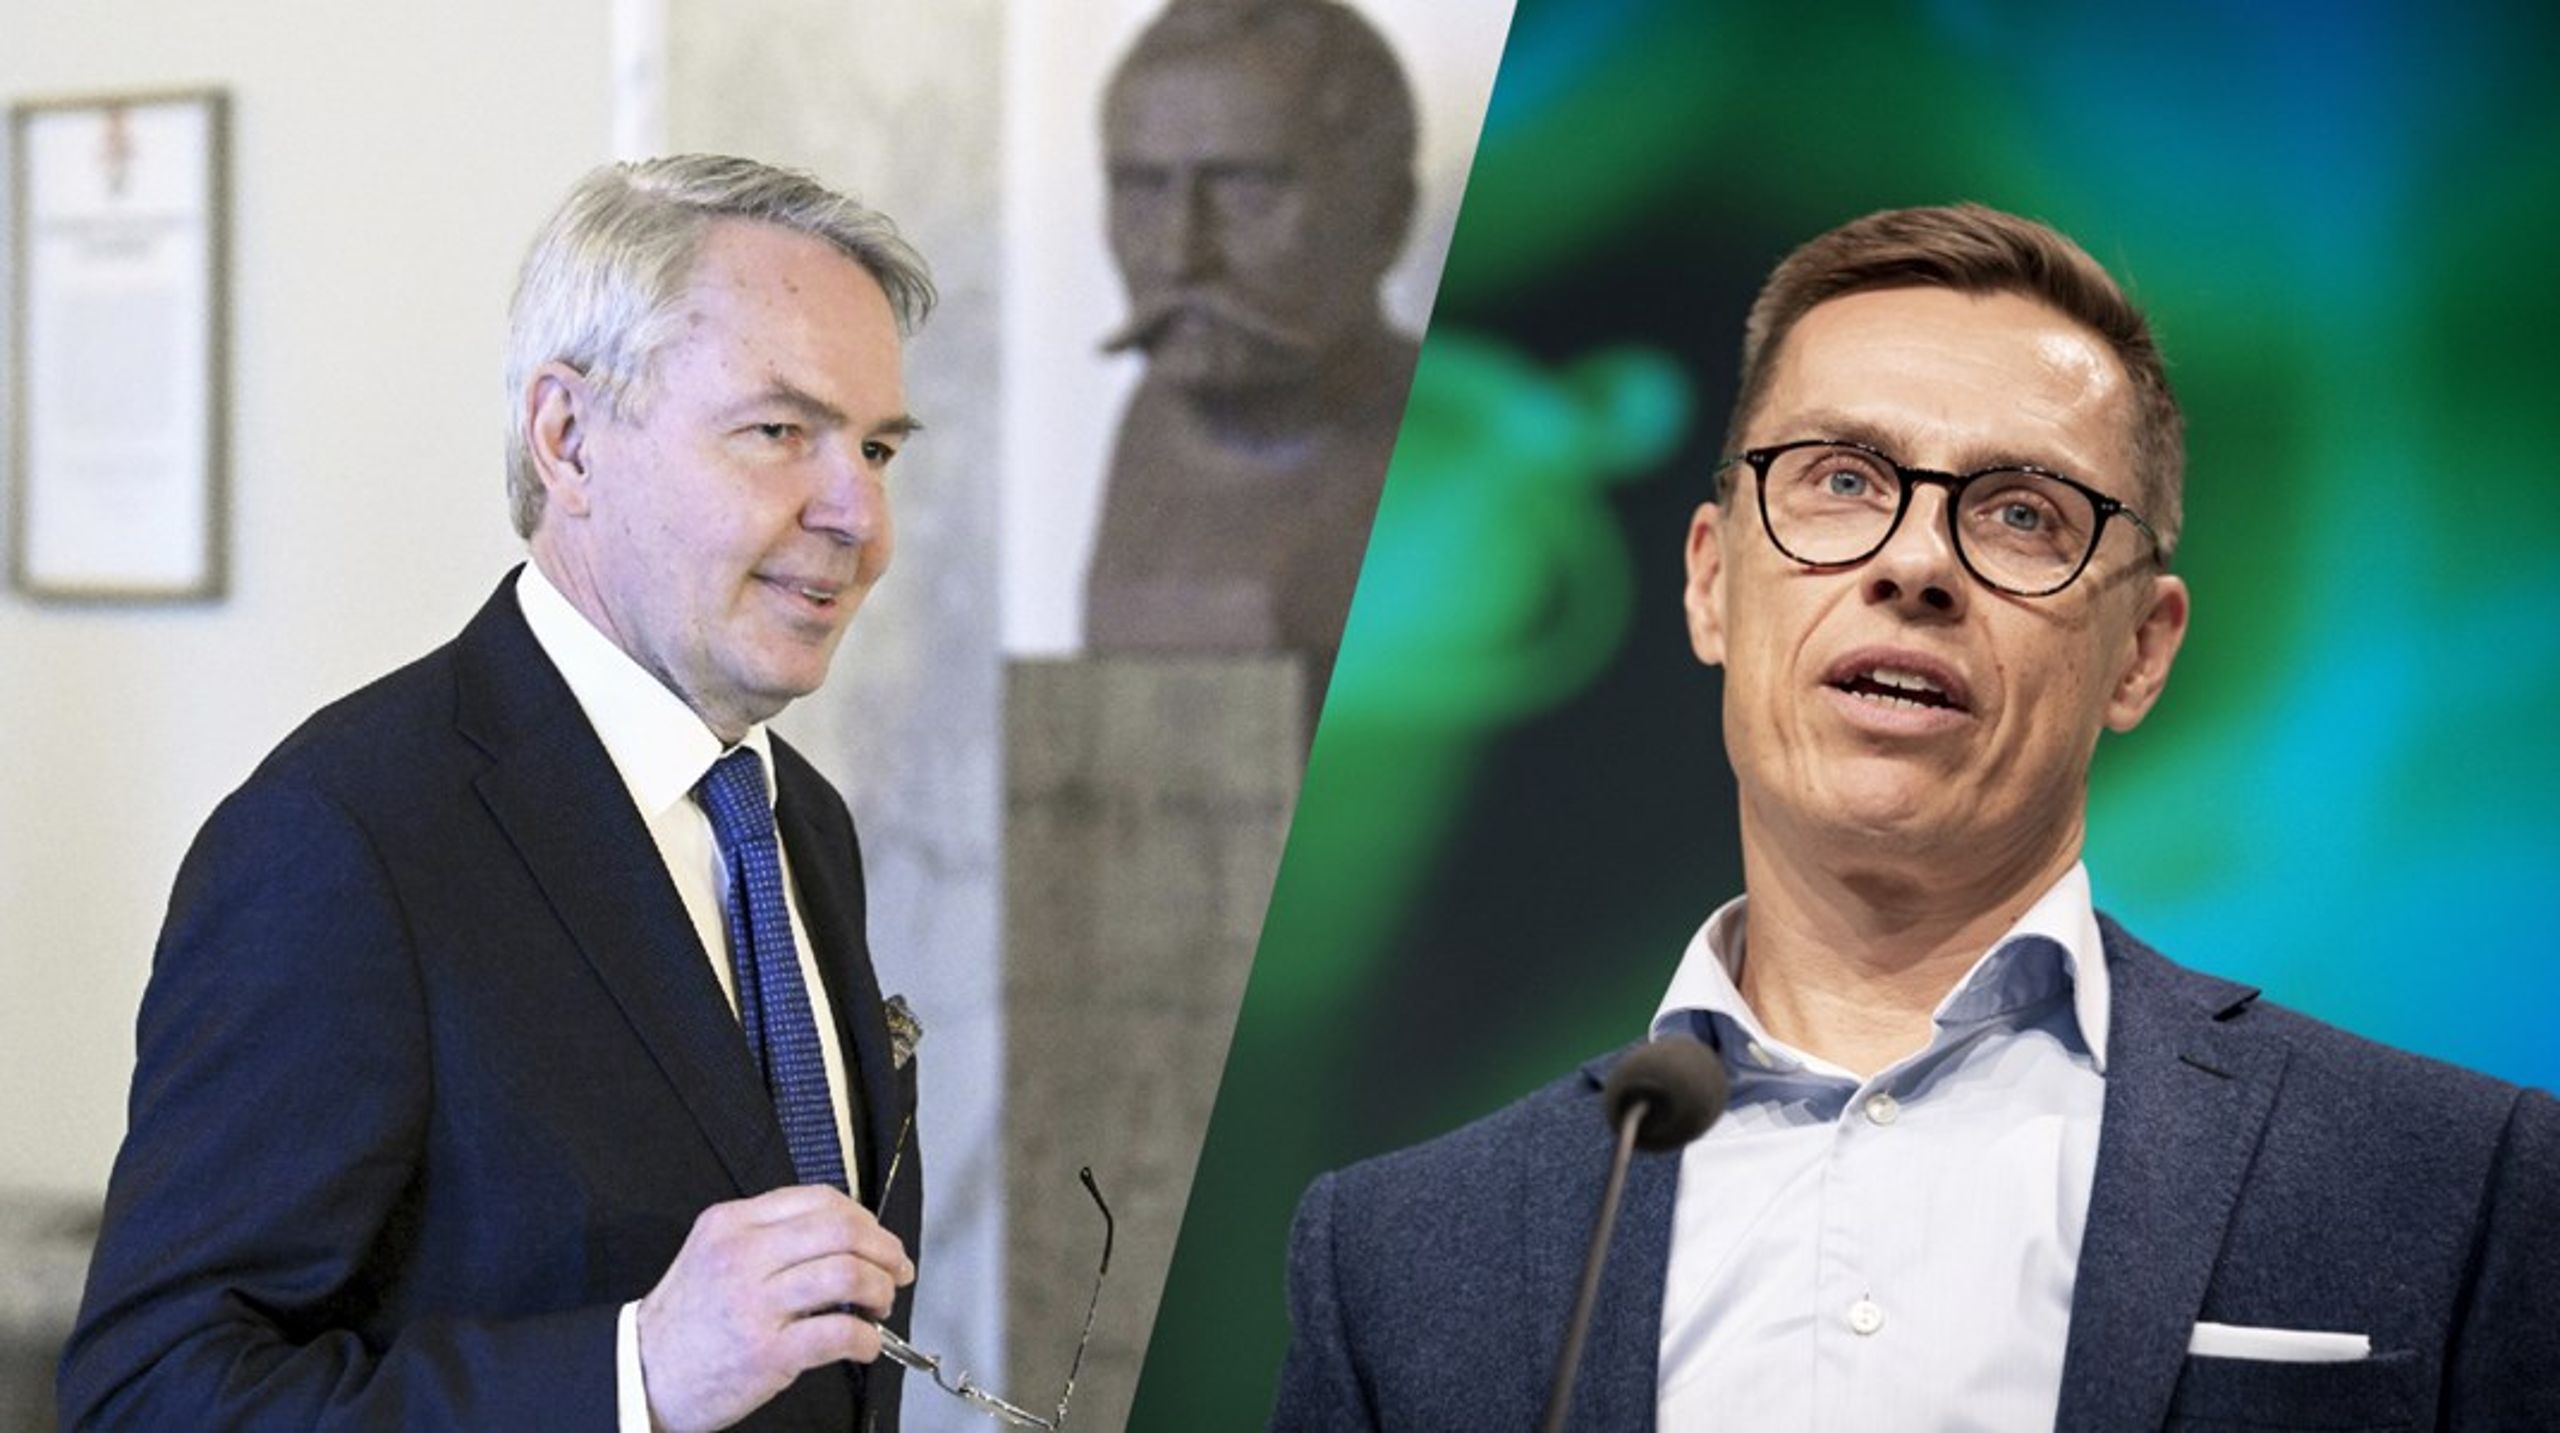 Søndag den 28. januar finder første runde af det finske præsidentvalg sted. Pekka Haavisto (tv.)&nbsp;og Alexander Stubb (th.) fører i meningsmålingerne.